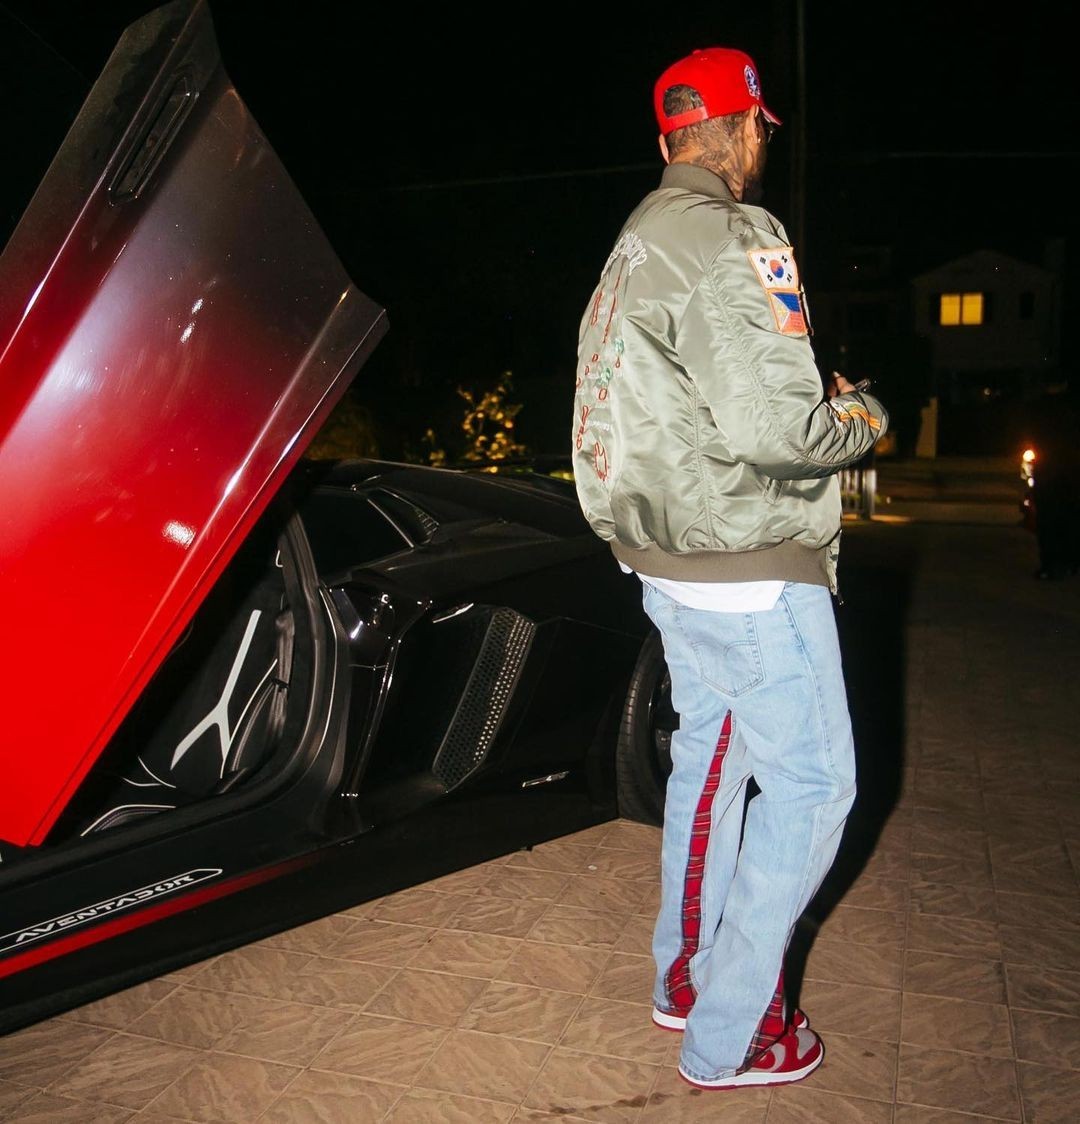 Chris Brown Shows Off $39,000 Louis Vuitton Airplane Bag